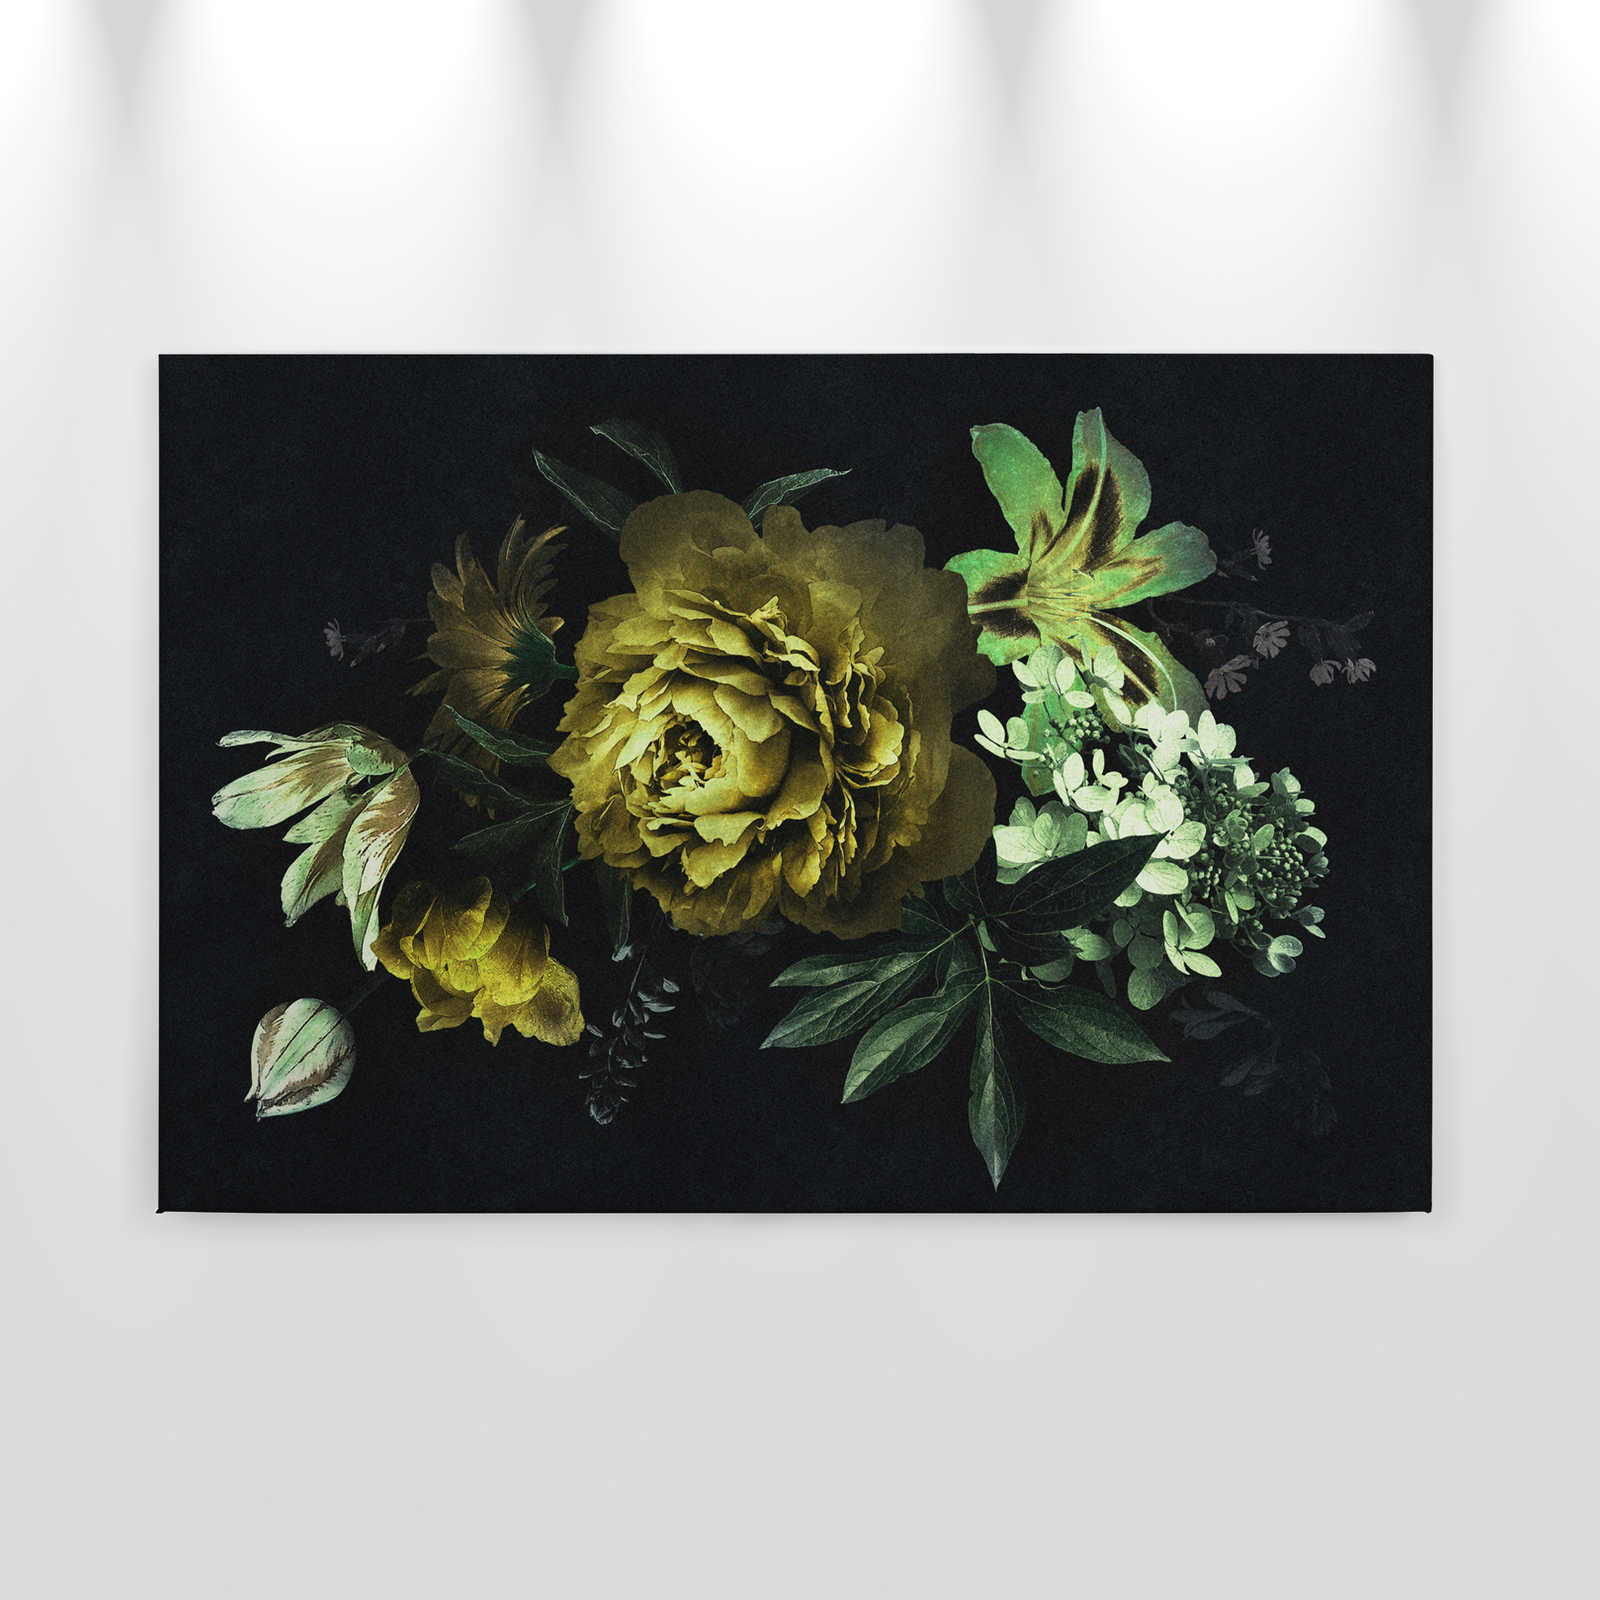             Drama queen 2 - Quadro su tela con bouquet e struttura in cartone di colore verde - 0,90 m x 0,60 m
        